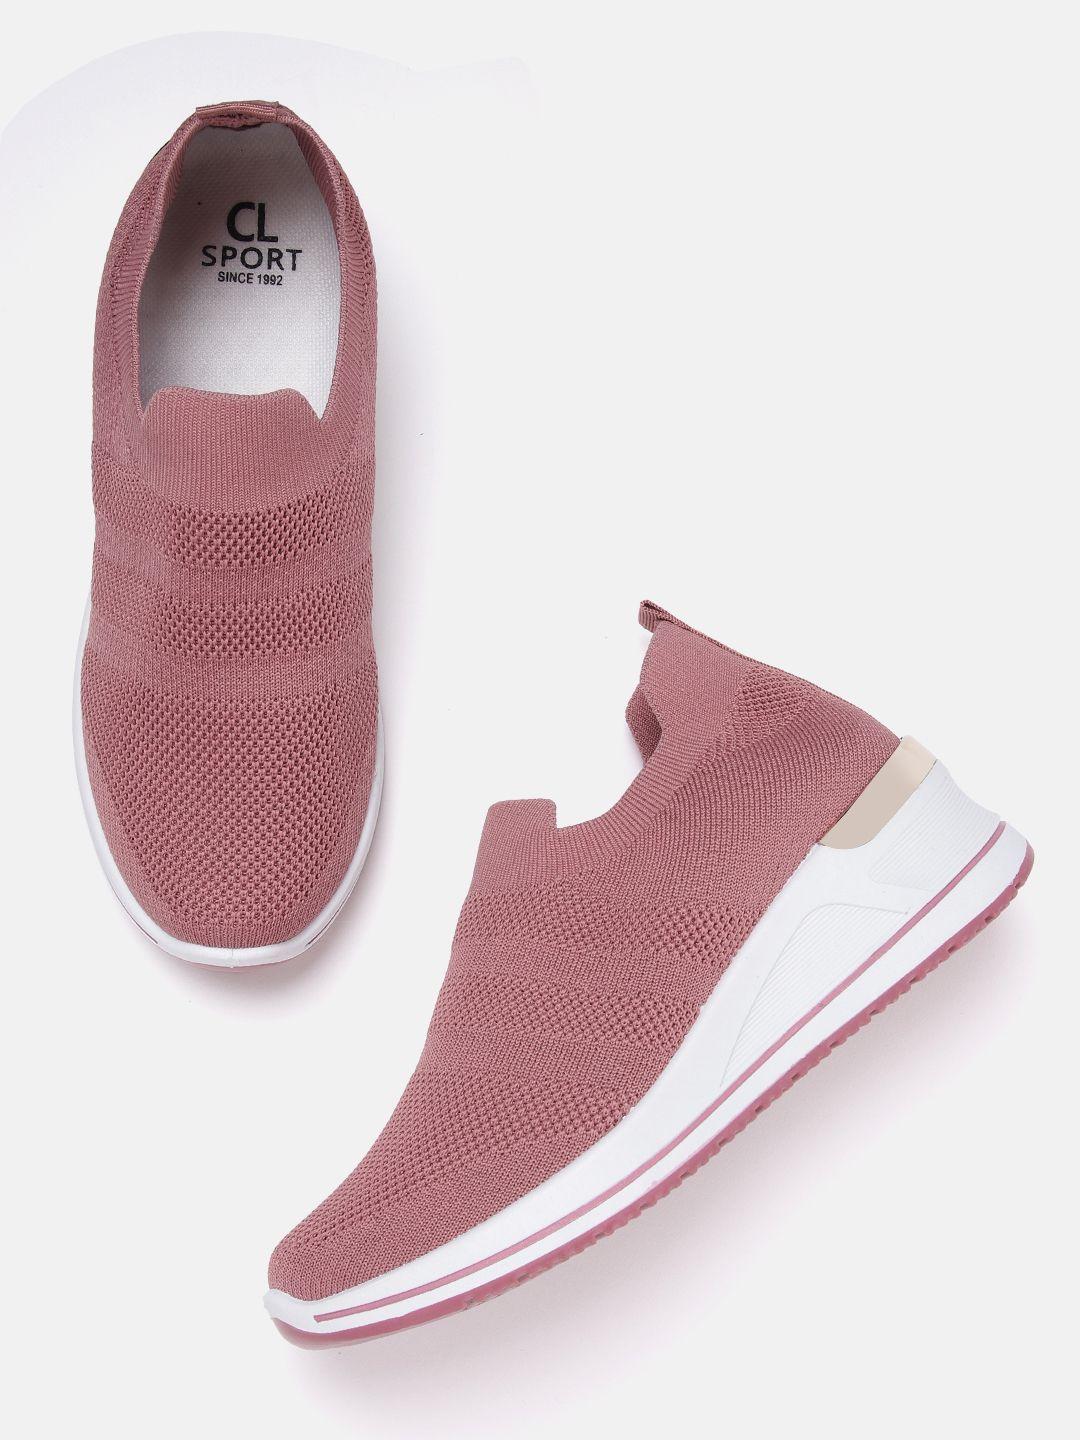 carlton london sports women dusty pink woven design sneakers